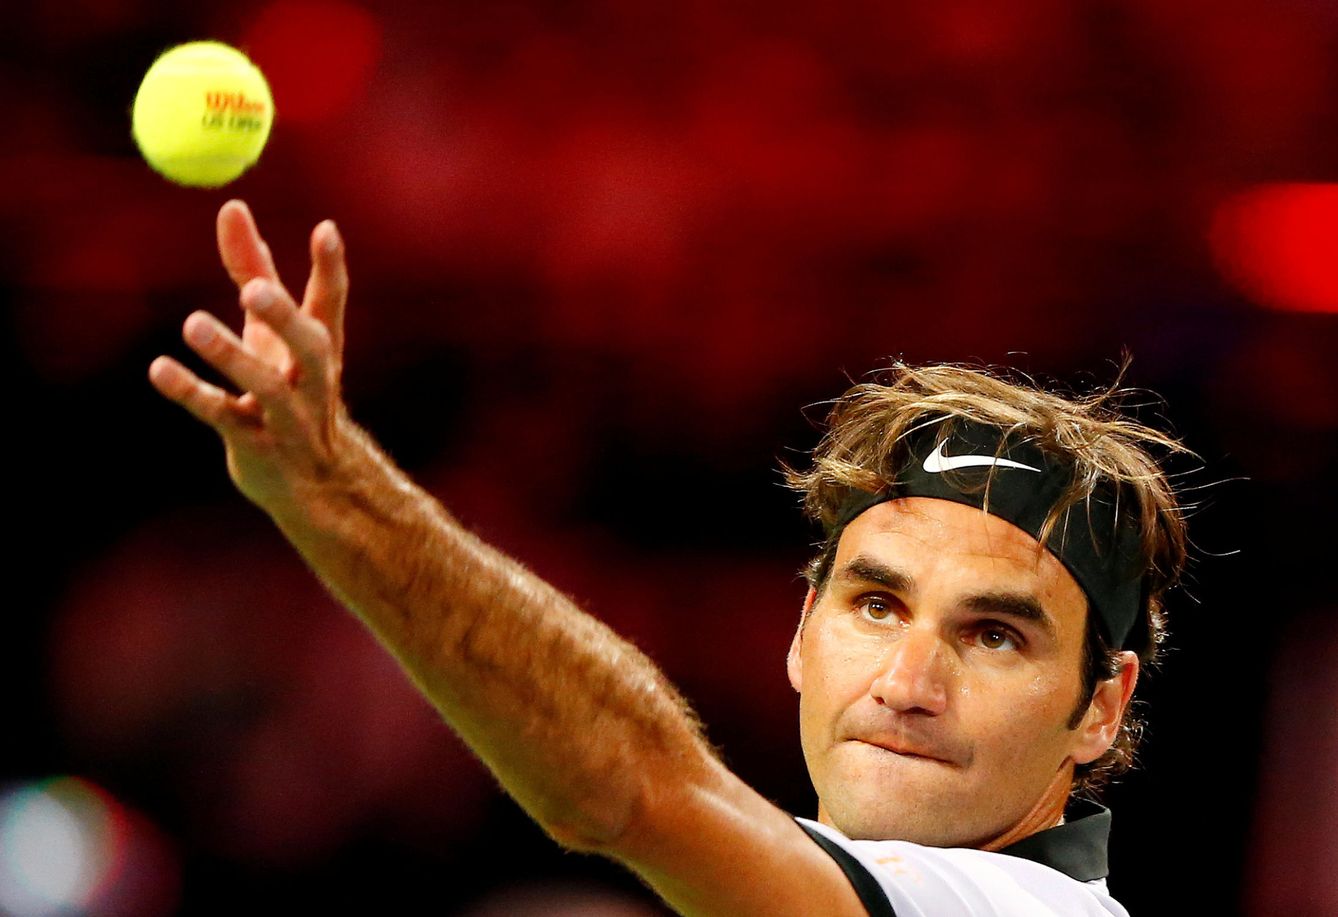 Las matemáticas han predicho cómo hacer el saque de tenis perfecto. (Reuters)